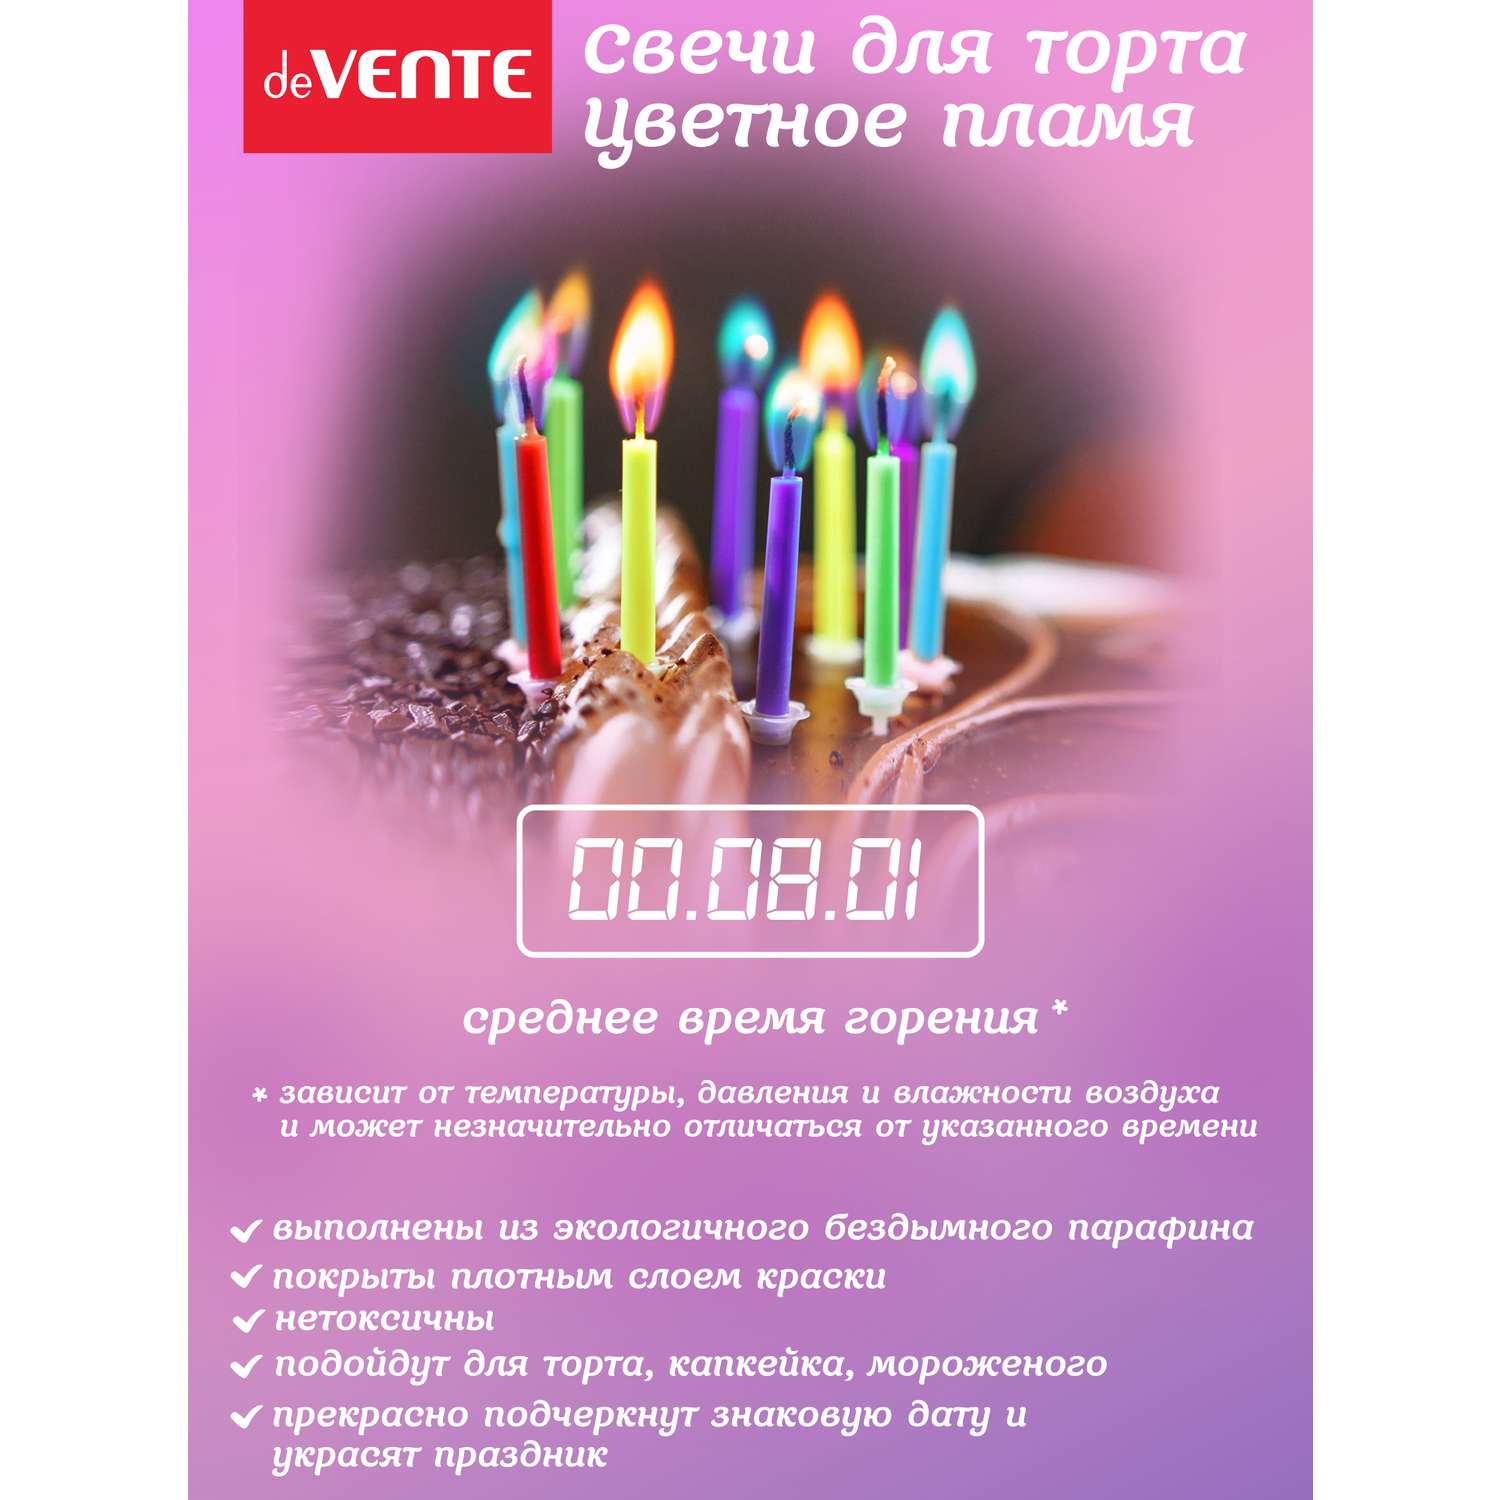 Набор свечей для торта deVENTE с цветным огнем - фото 4